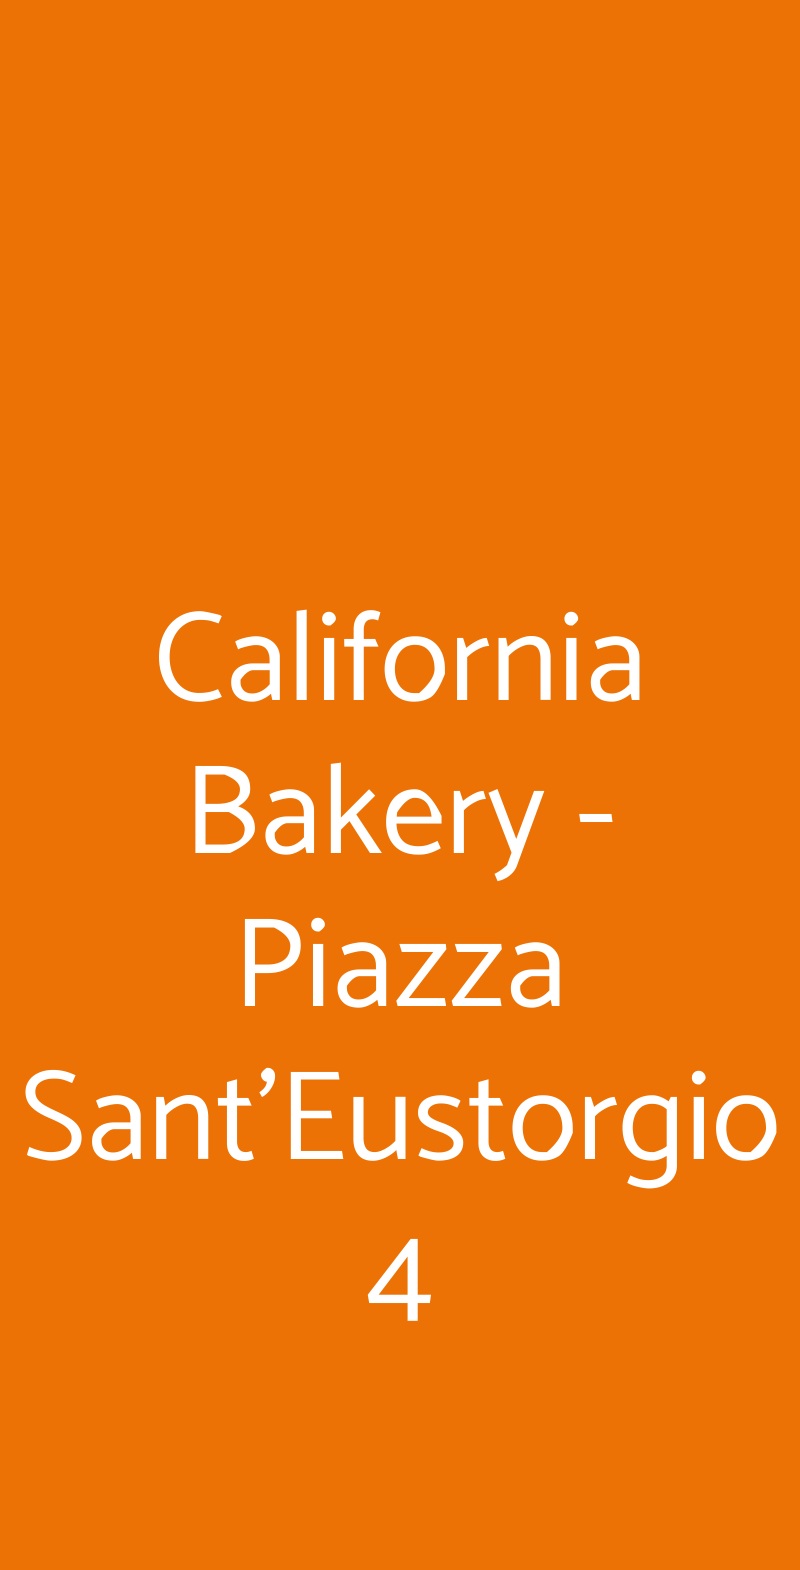 California Bakery - Piazza Sant'Eustorgio 4 Milano menù 1 pagina